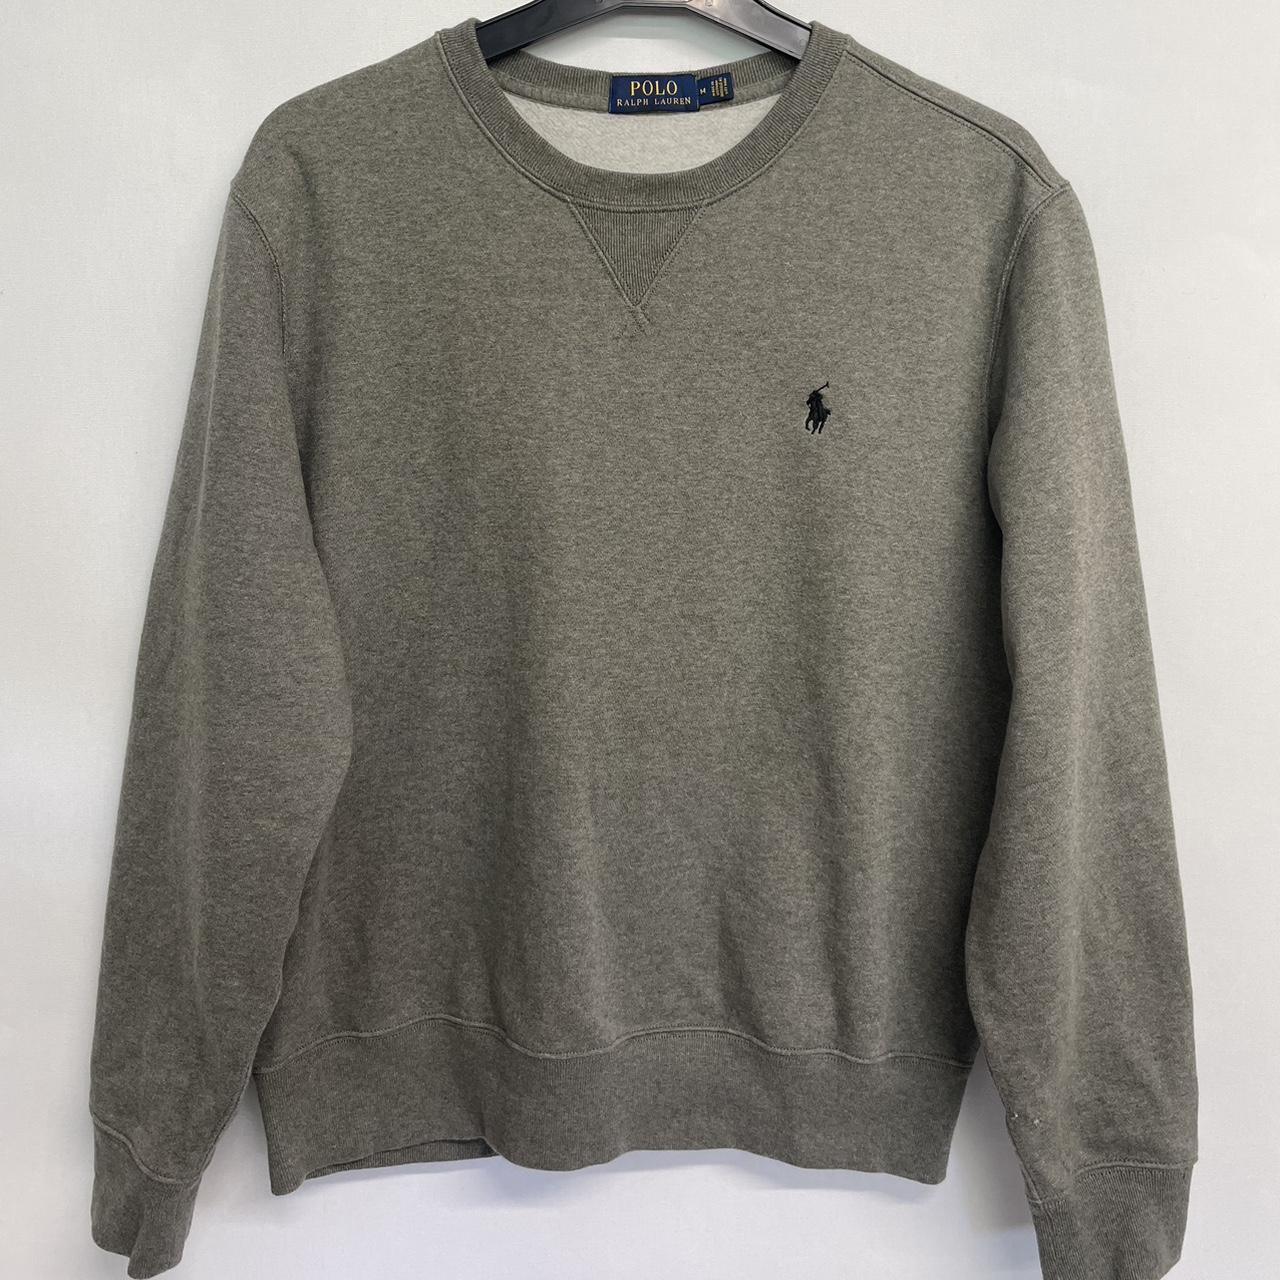 Polo Ralph Lauren Men's Grey and Khaki Sweatshirt | Depop